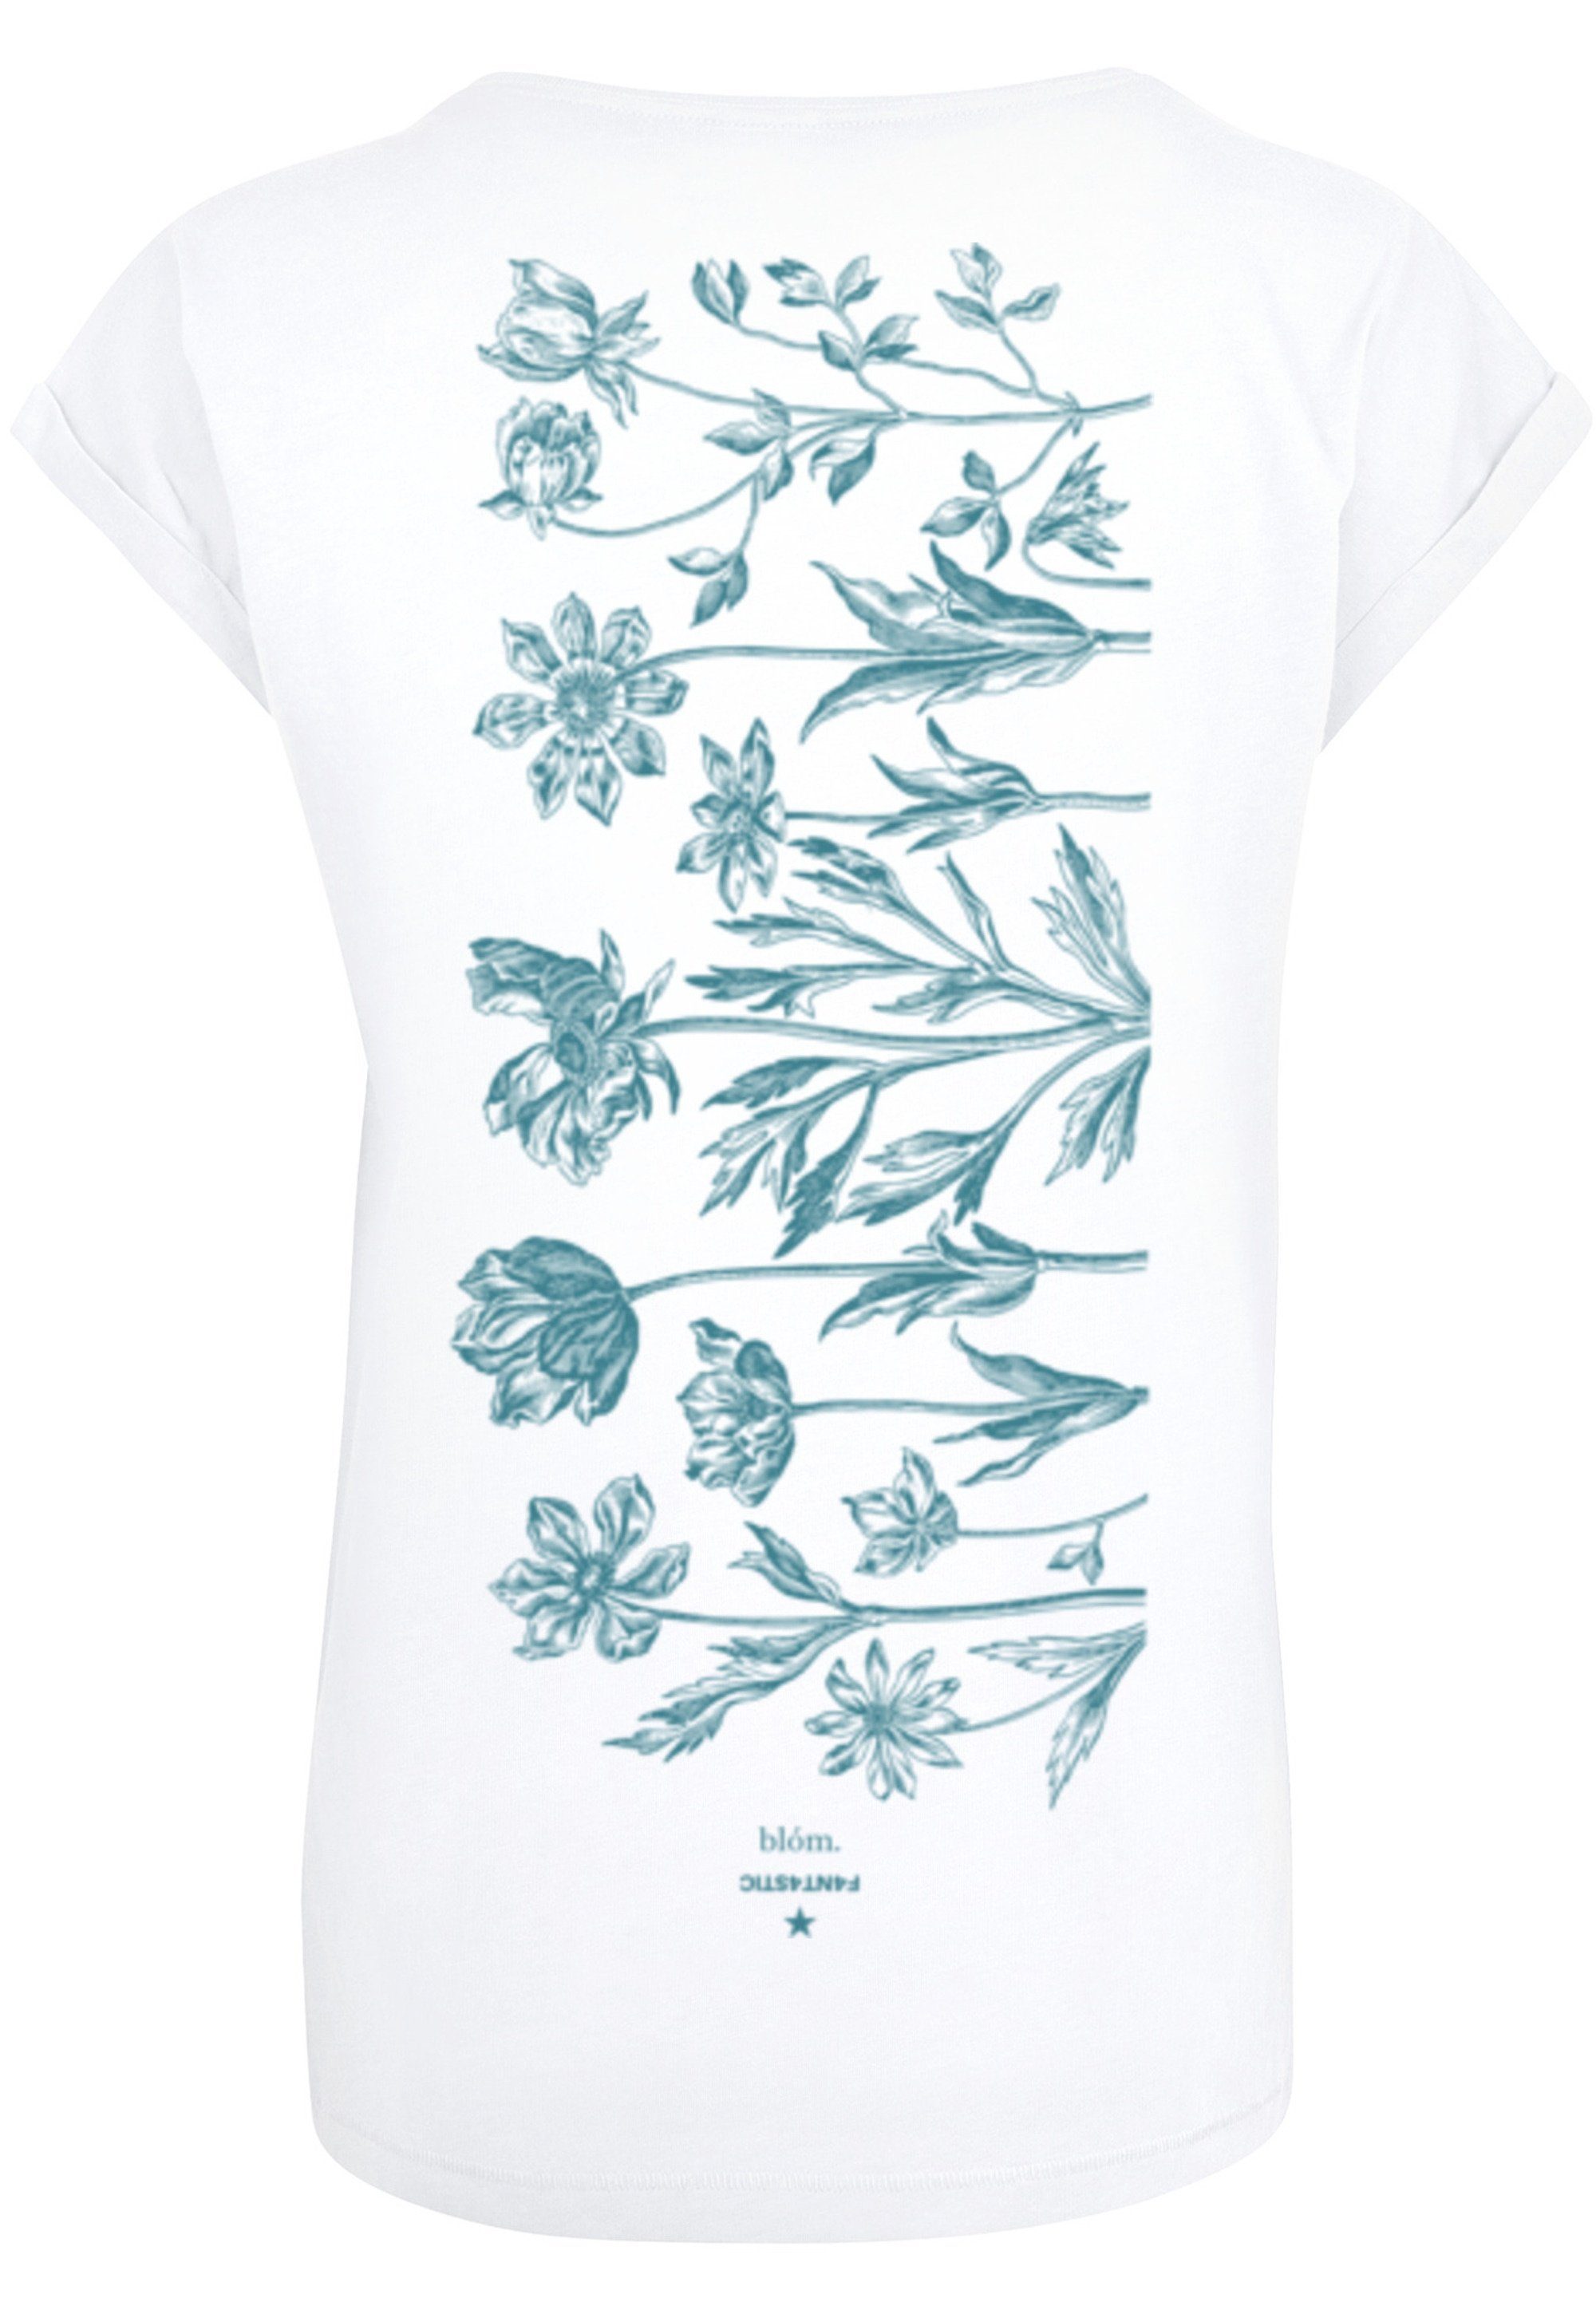 F4NT4STIC Print Blumenmuster Blau weiß T-Shirt